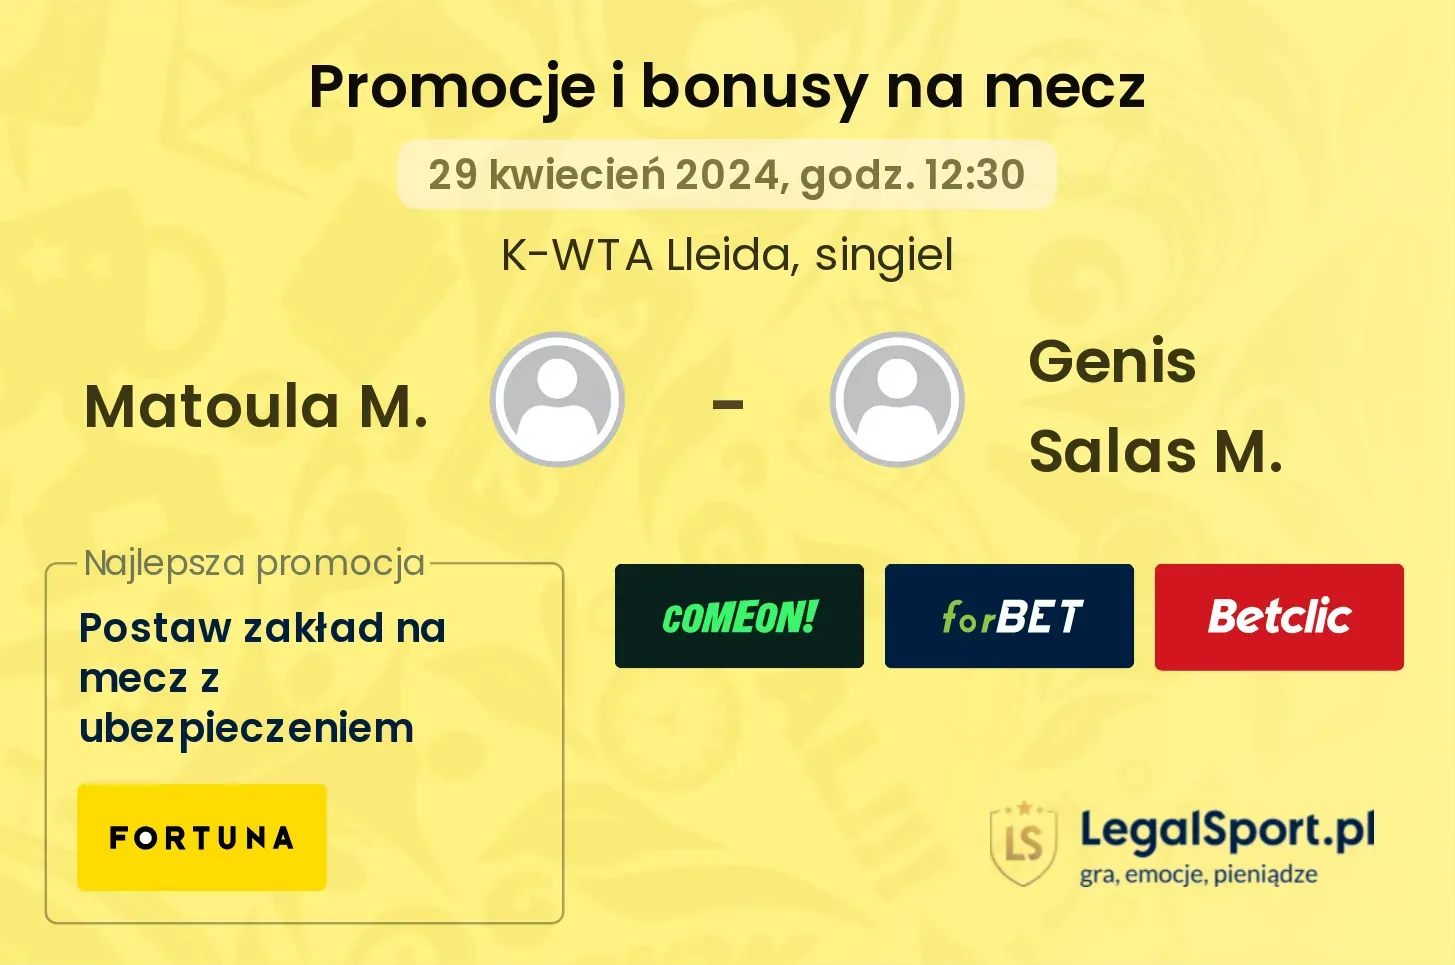 Matoula M. - Genis Salas M. promocje bonusy na mecz